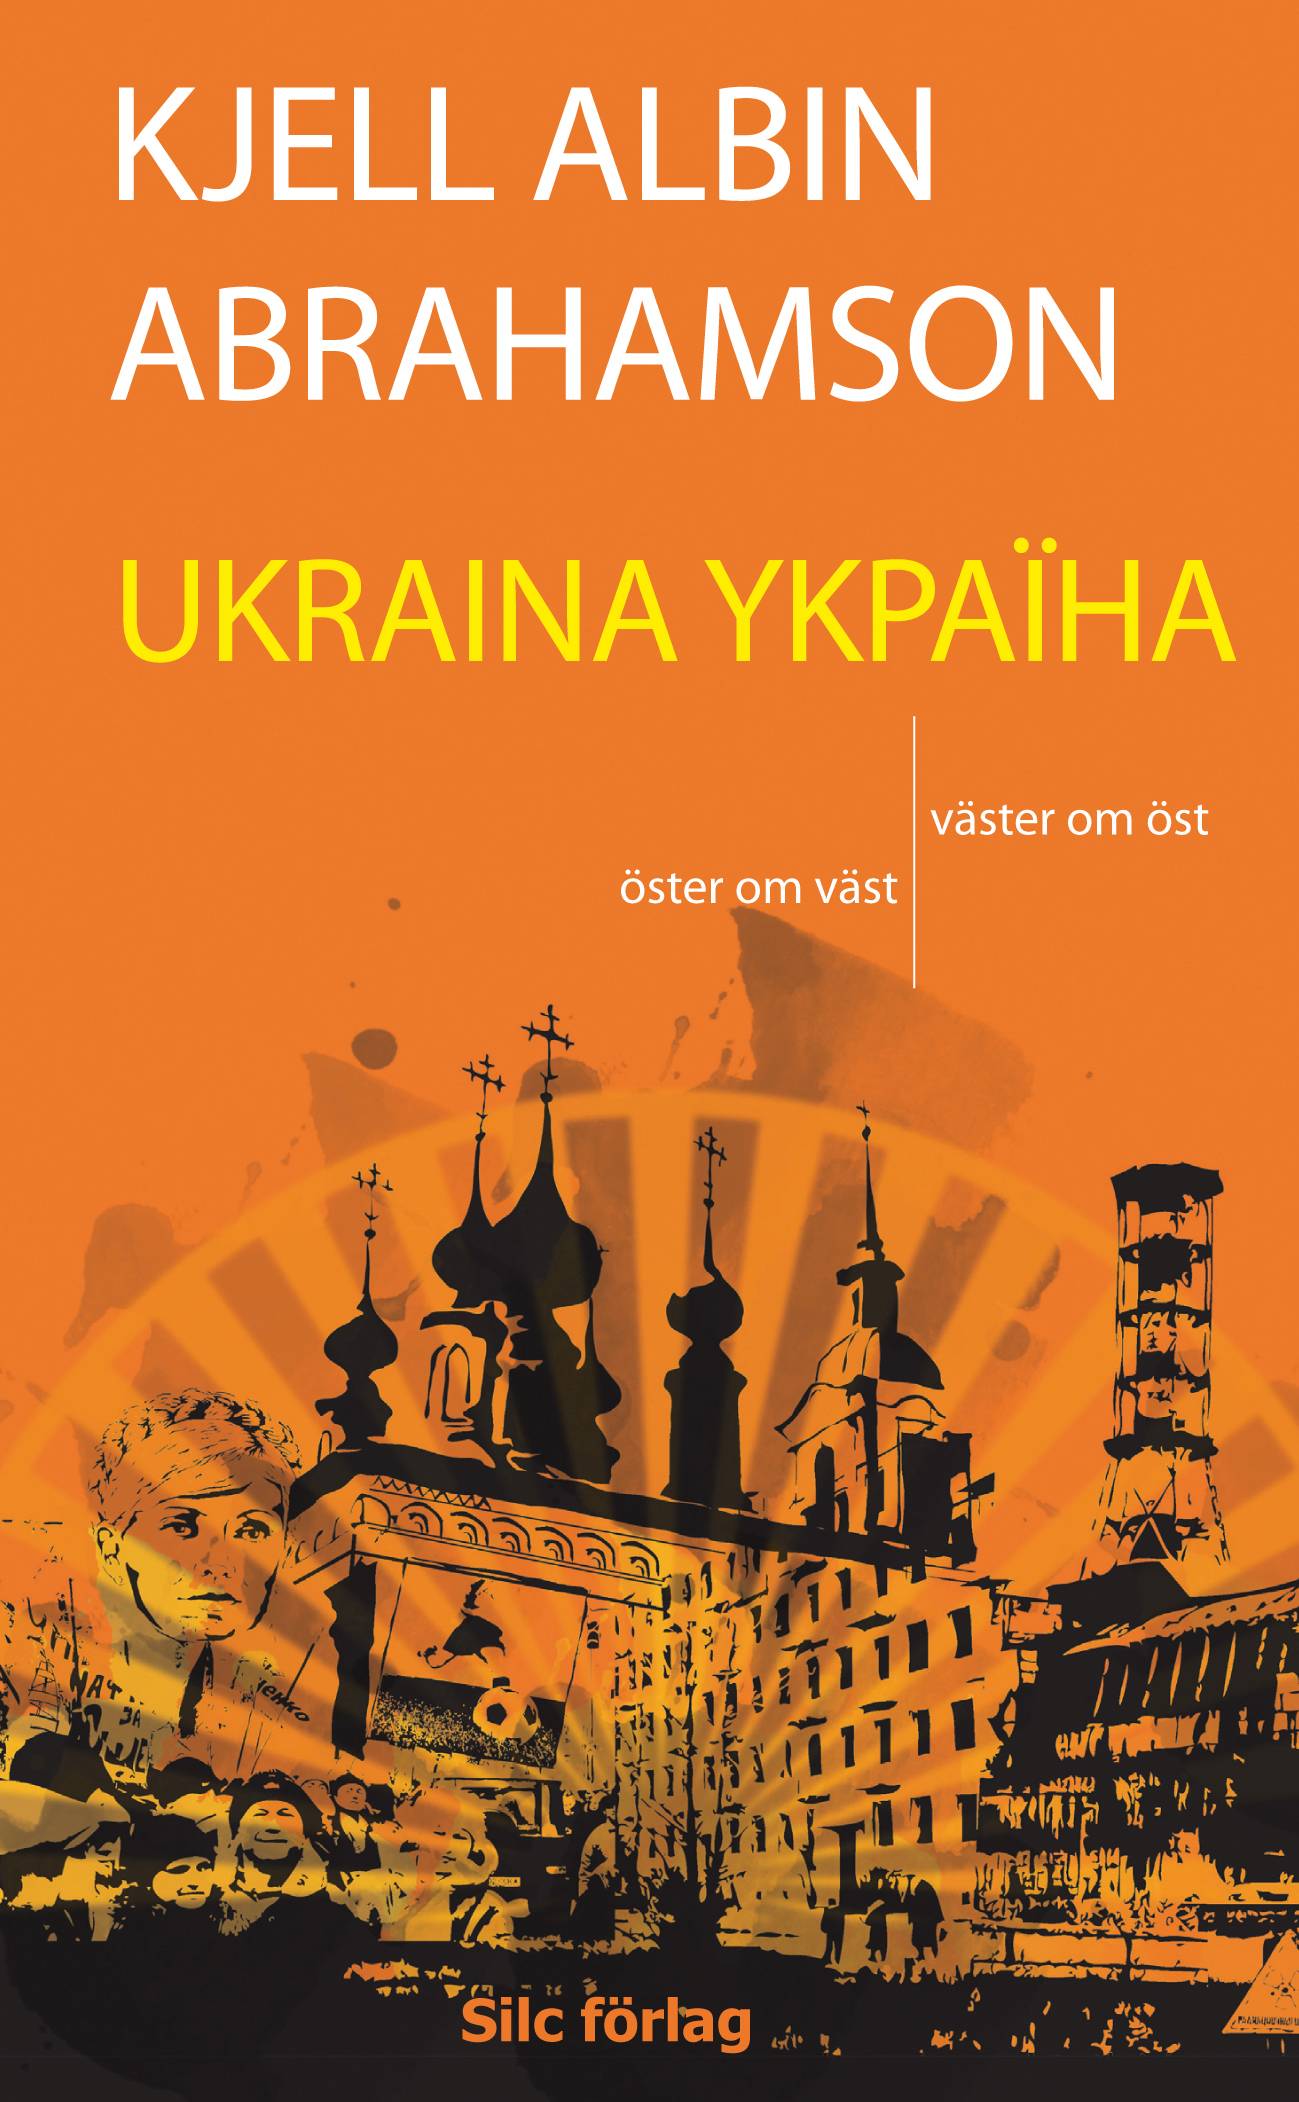 UKRAINA YKPAÏHA - Öster om väst, väster om öst